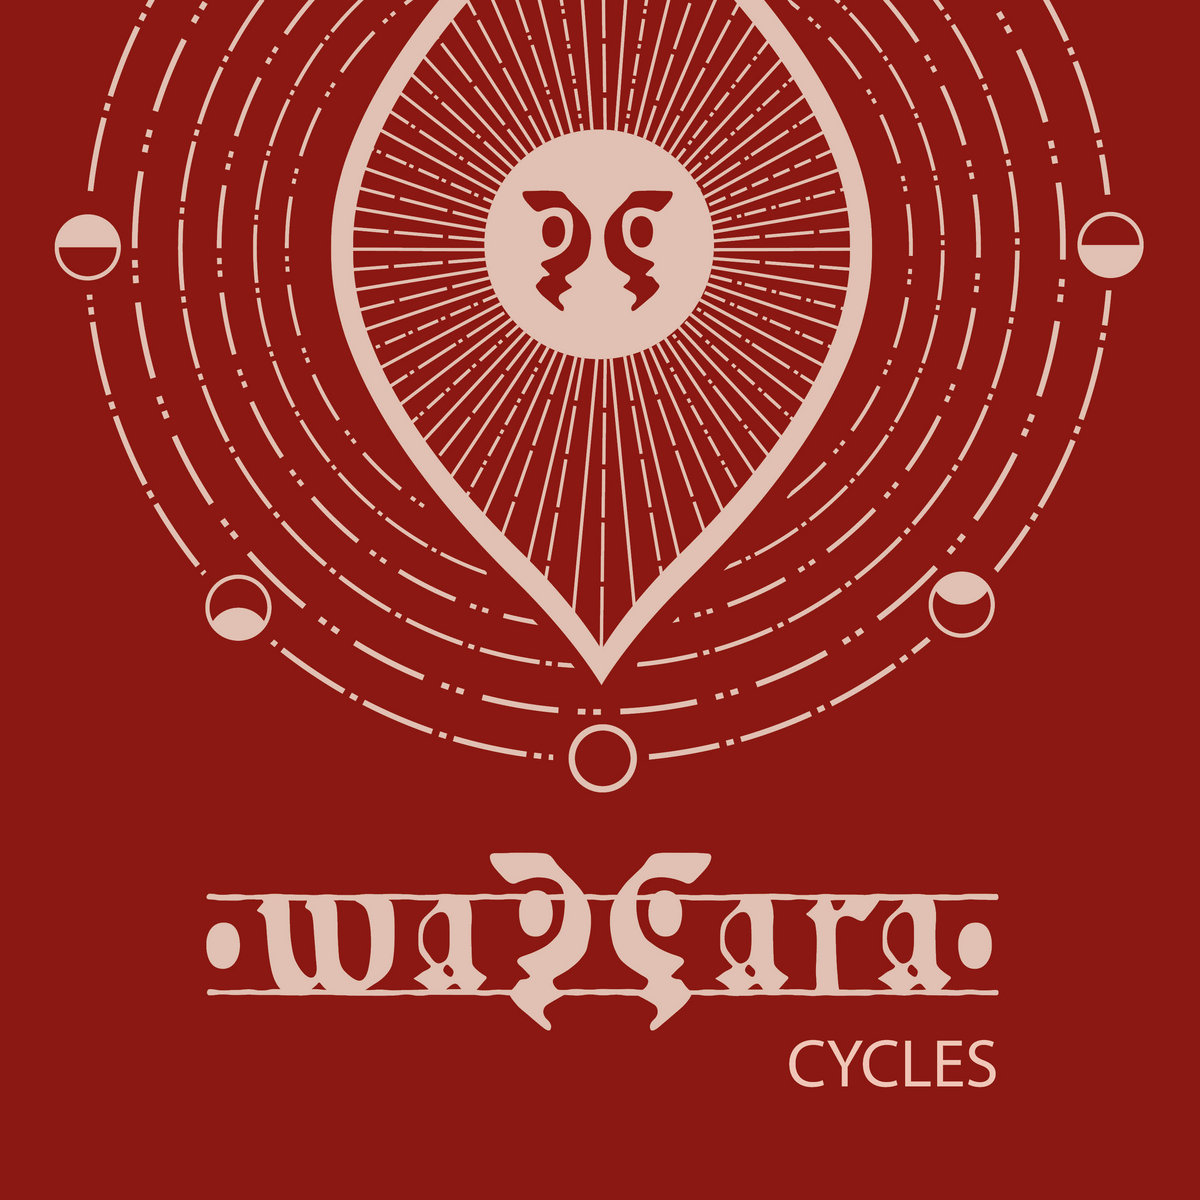 wazzara: CYCLES